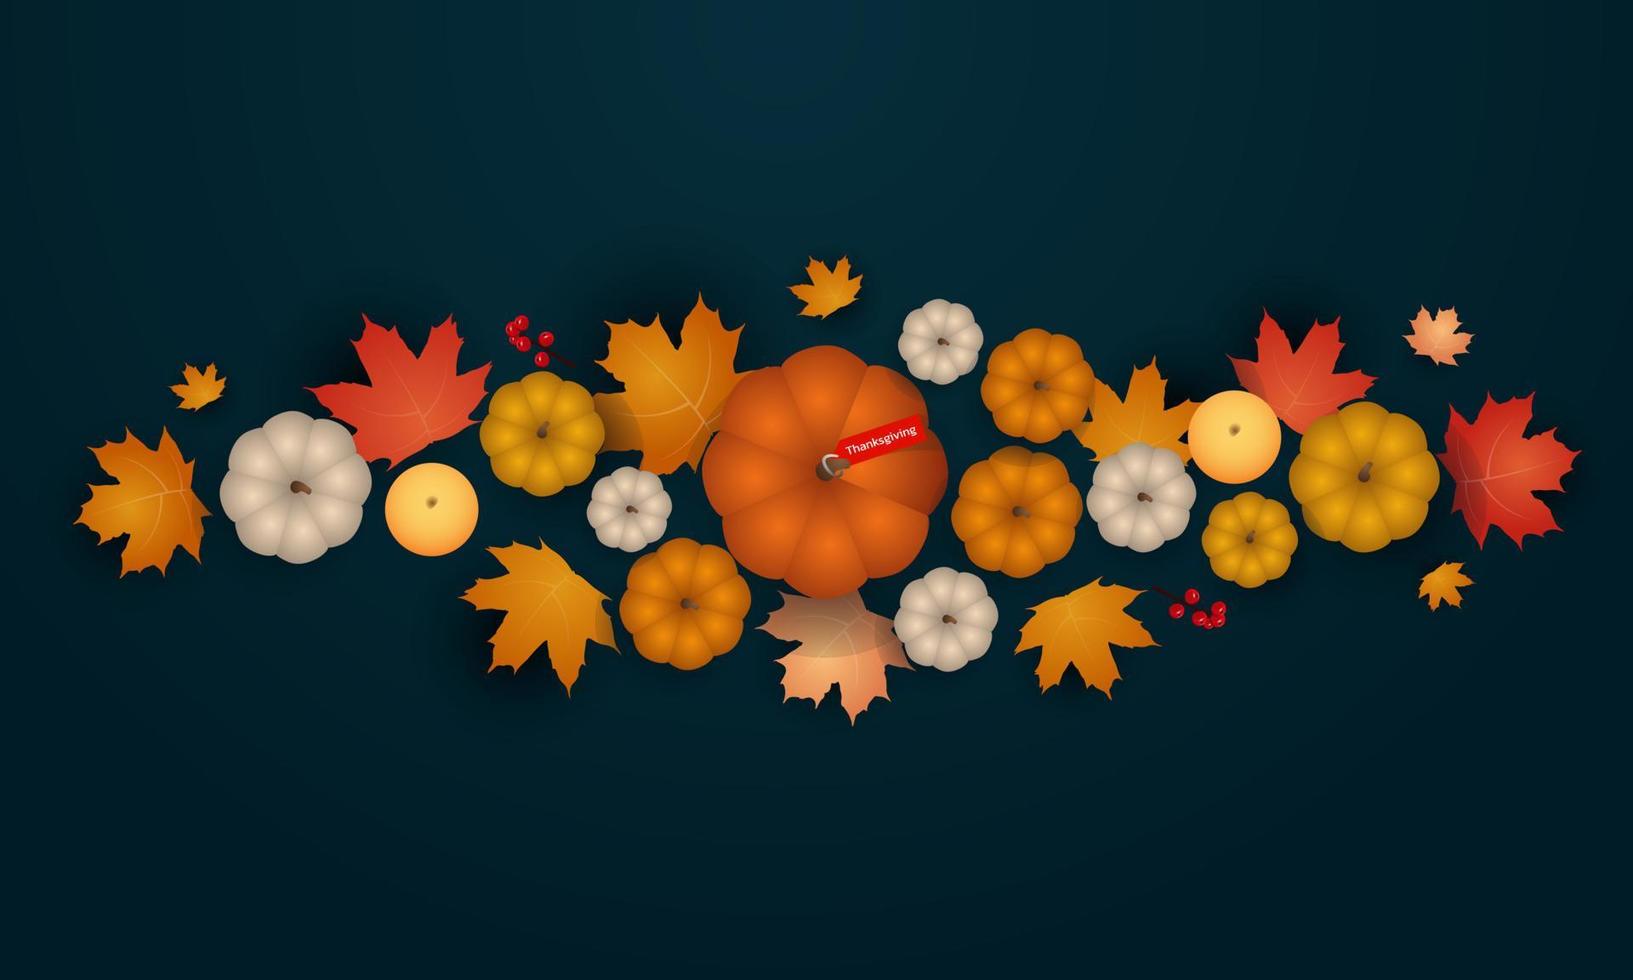 bannière du jour d'action de grâces. jour de thanksgiving, concept de dîner festif. illustration vectorielle pour carte postale, bannière, carte, affiche, arrière-plan. vecteur